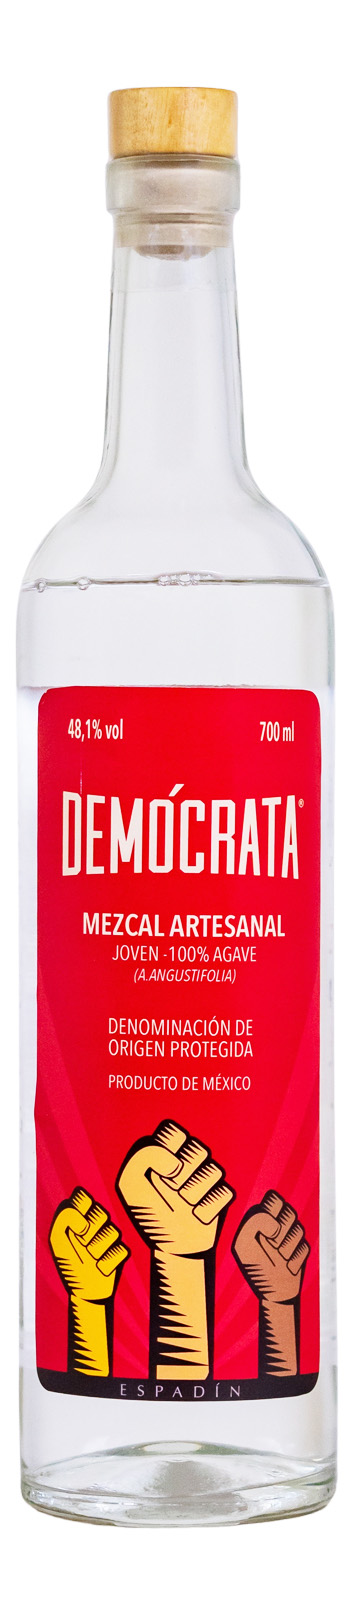 Demócrata Mezcal Artesanal Espadin - 0,7L 48,1% vol